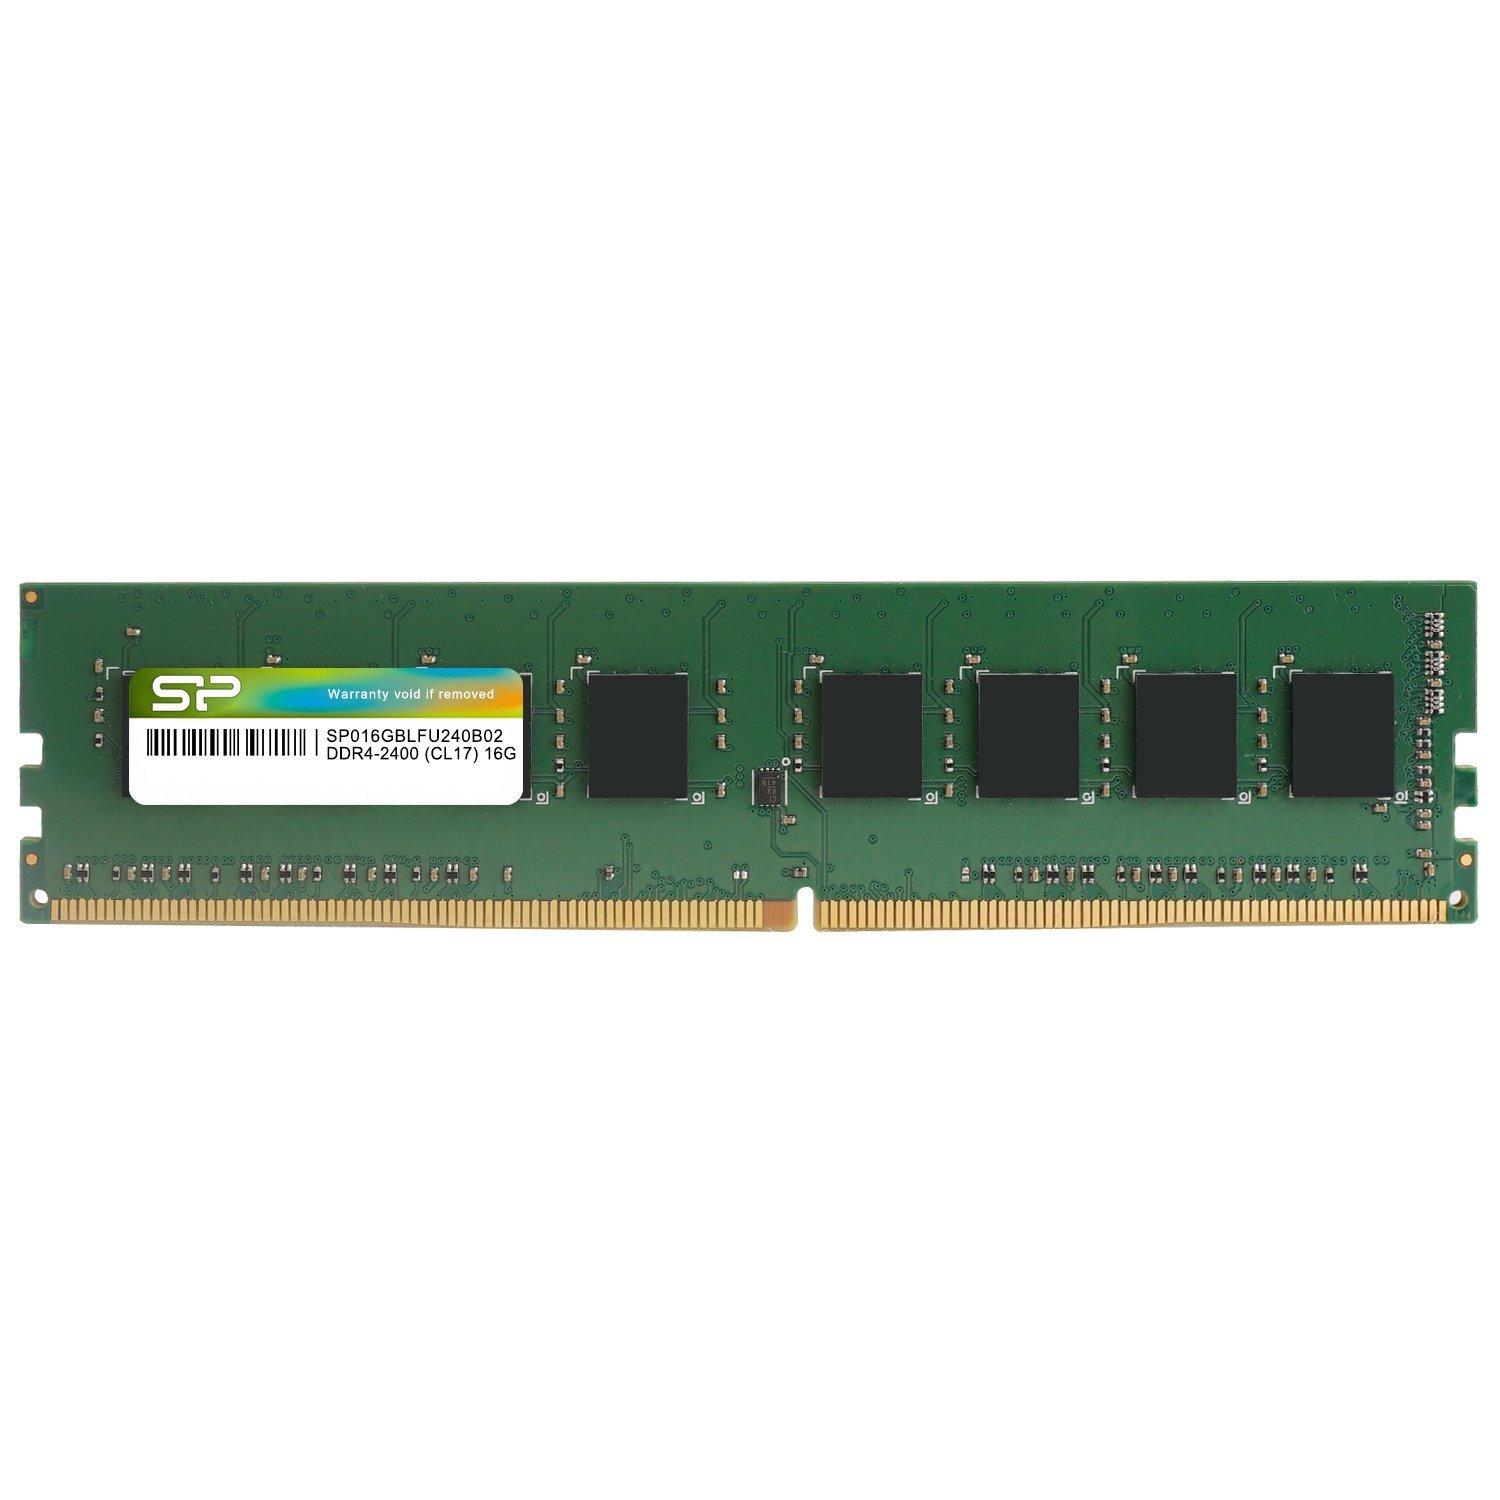 ECJOY!】 Silicon Power DDR4 288-PIN Unbuffered DIMM DDR4-2400 CL17 